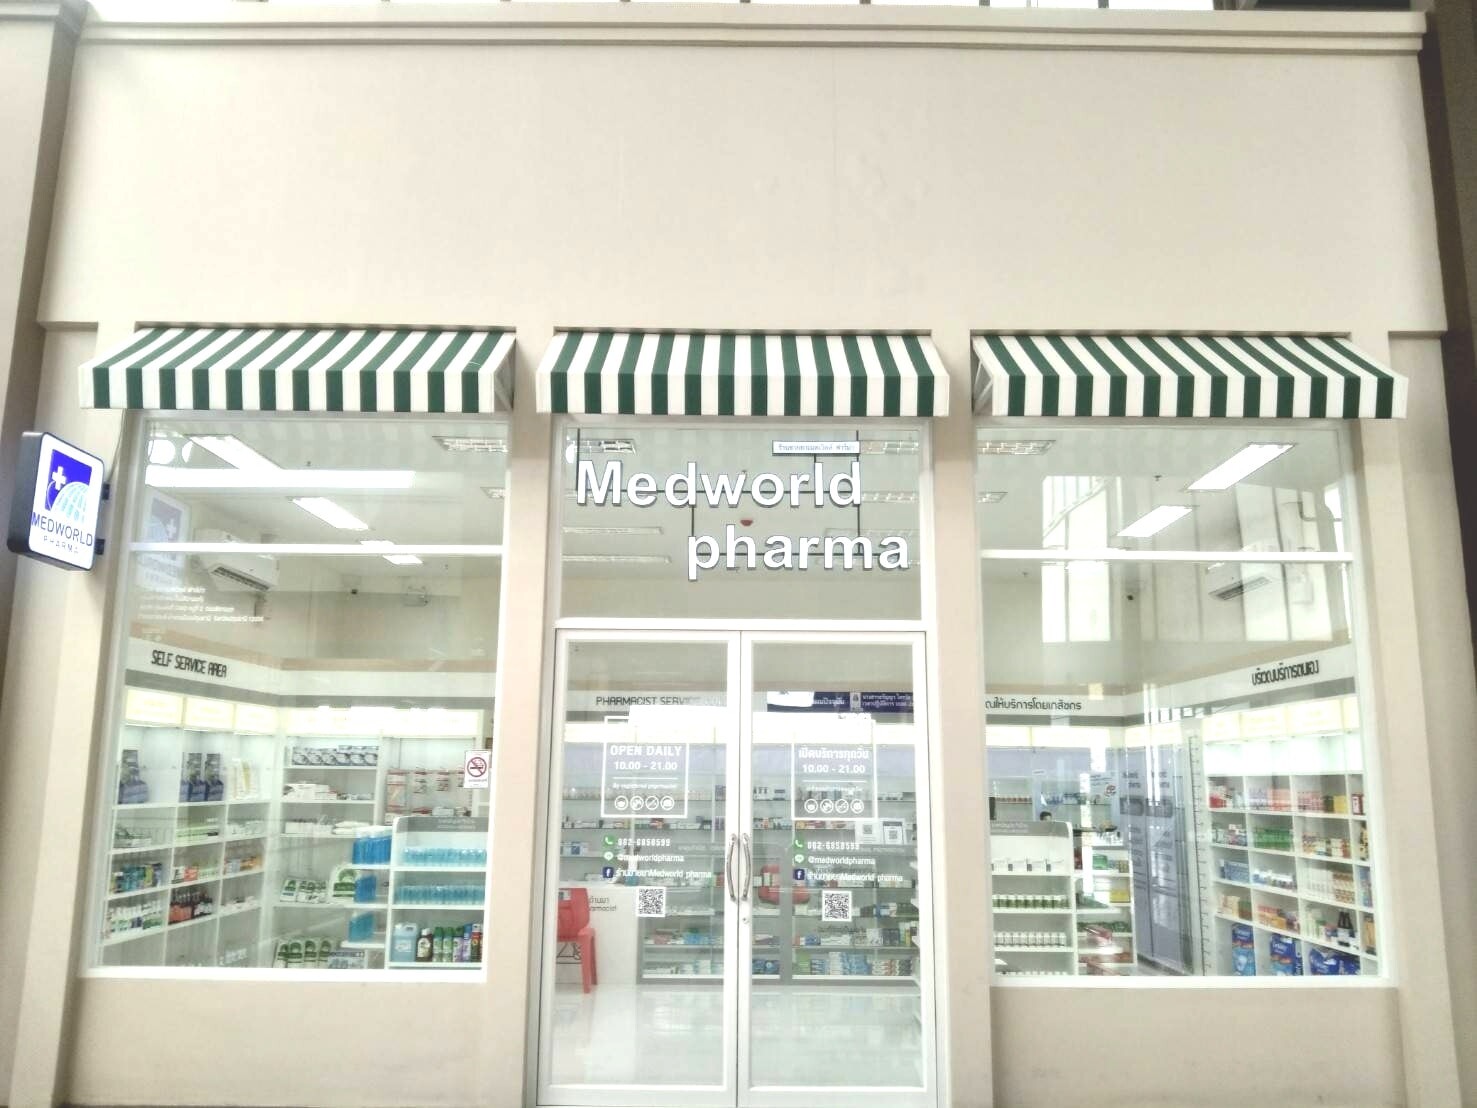 Medworld Pharma ฉลองเปิดร้านใหม่ เดอะไนน์ เซ็นเตอร์ ติวานนท์ พบกับผลิตภัณฑ์ยา-เวชภัณฑ์ คุณภาพ ในราคาสุดคุ้ม โปรสุดปัง